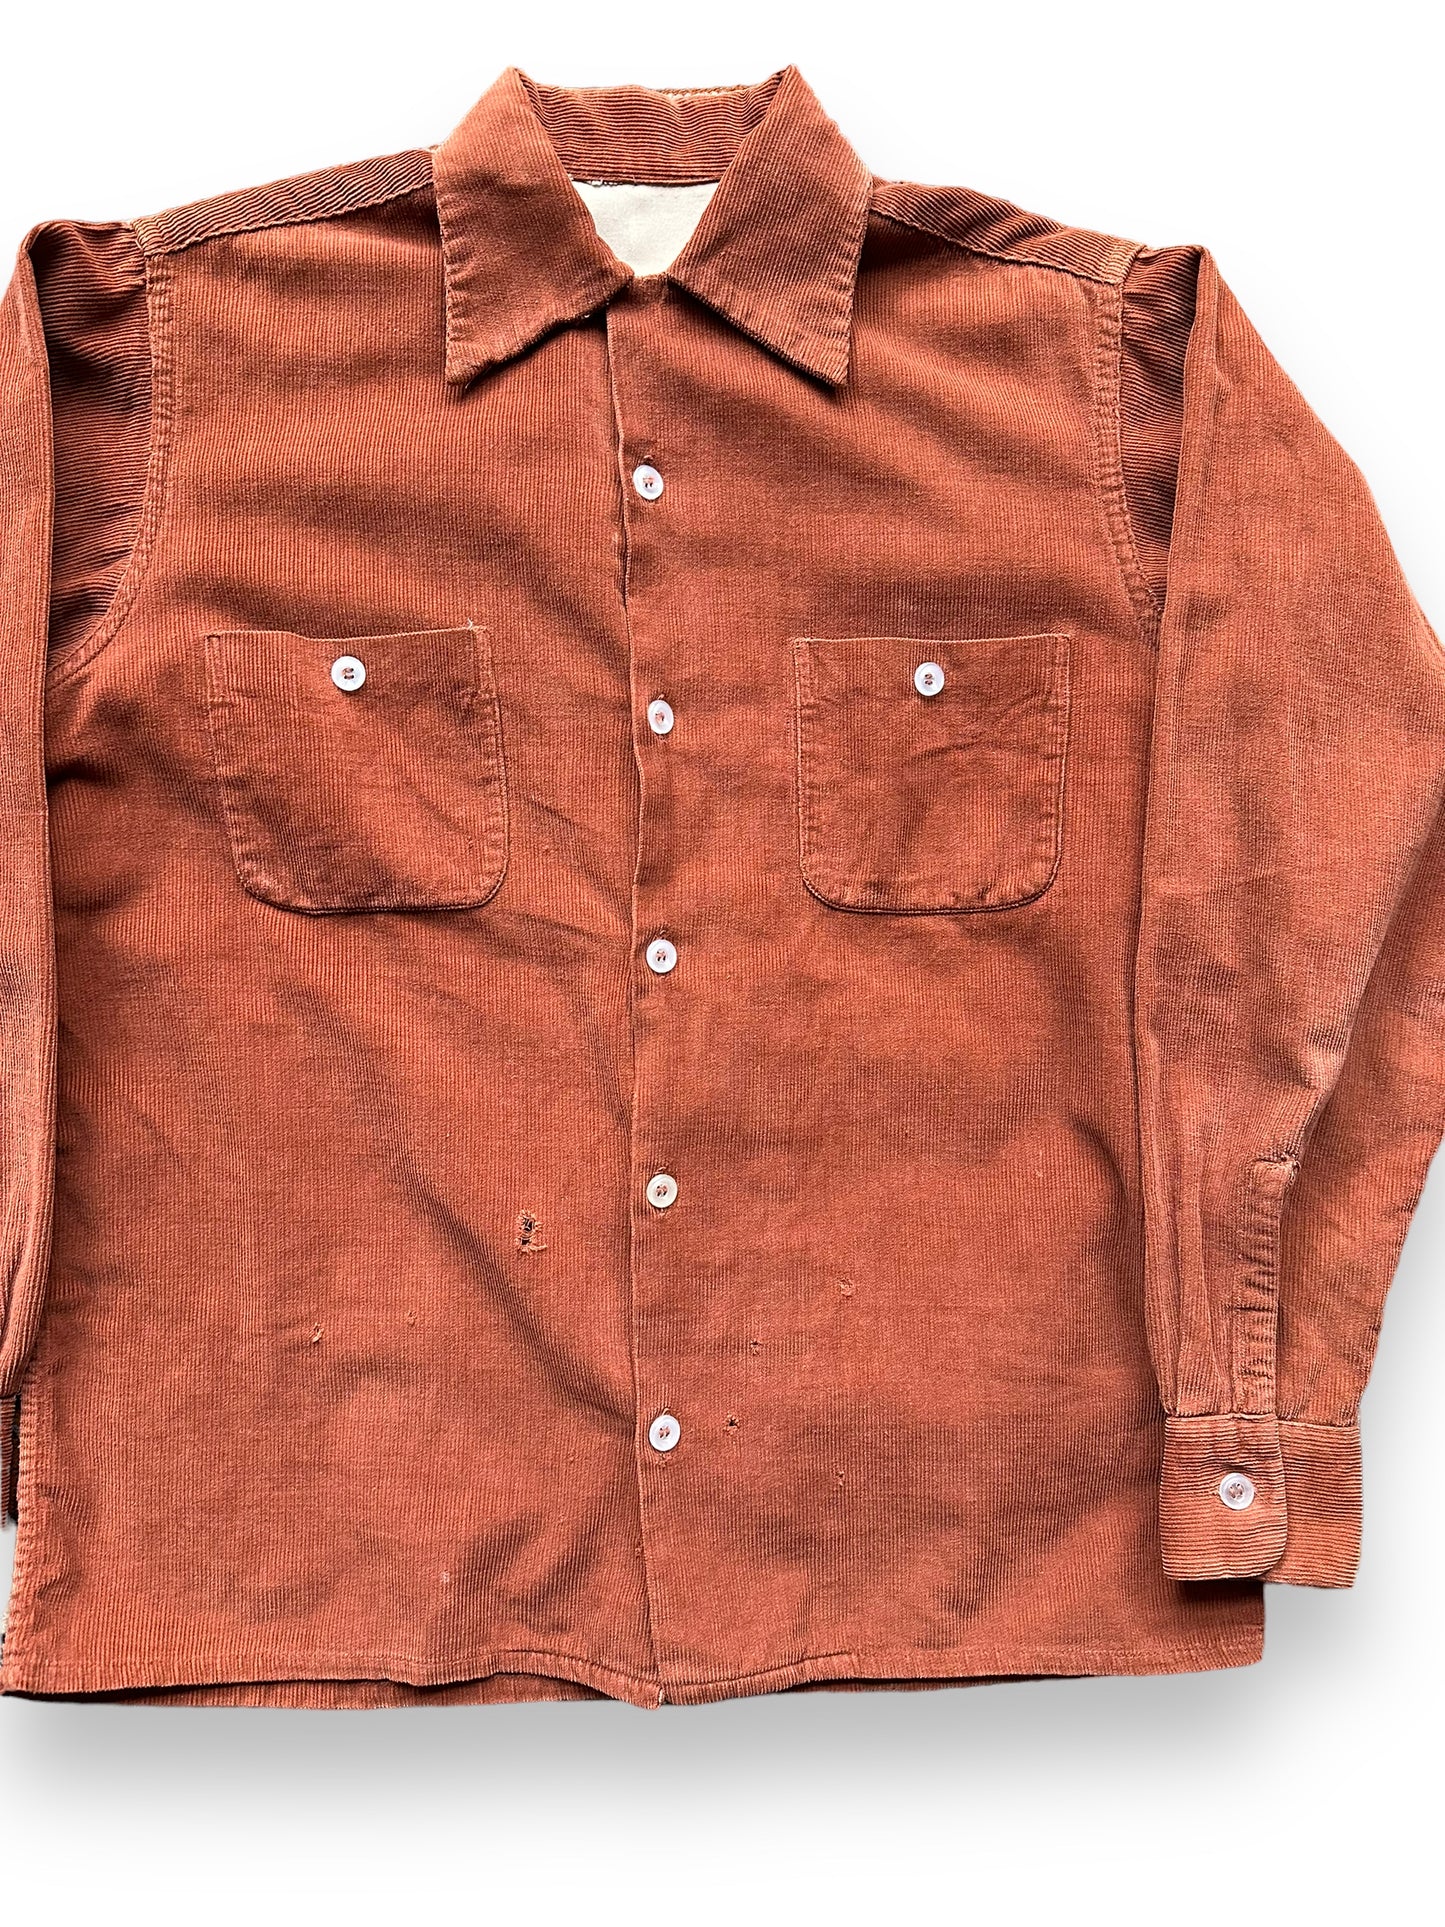 Front Detail View of Vintage Rust Colored Corduroy Loop Collar Shirt  SZ M | Vintage Loop Collar Shirt Seattle | Barn Owl Vintage Seattle